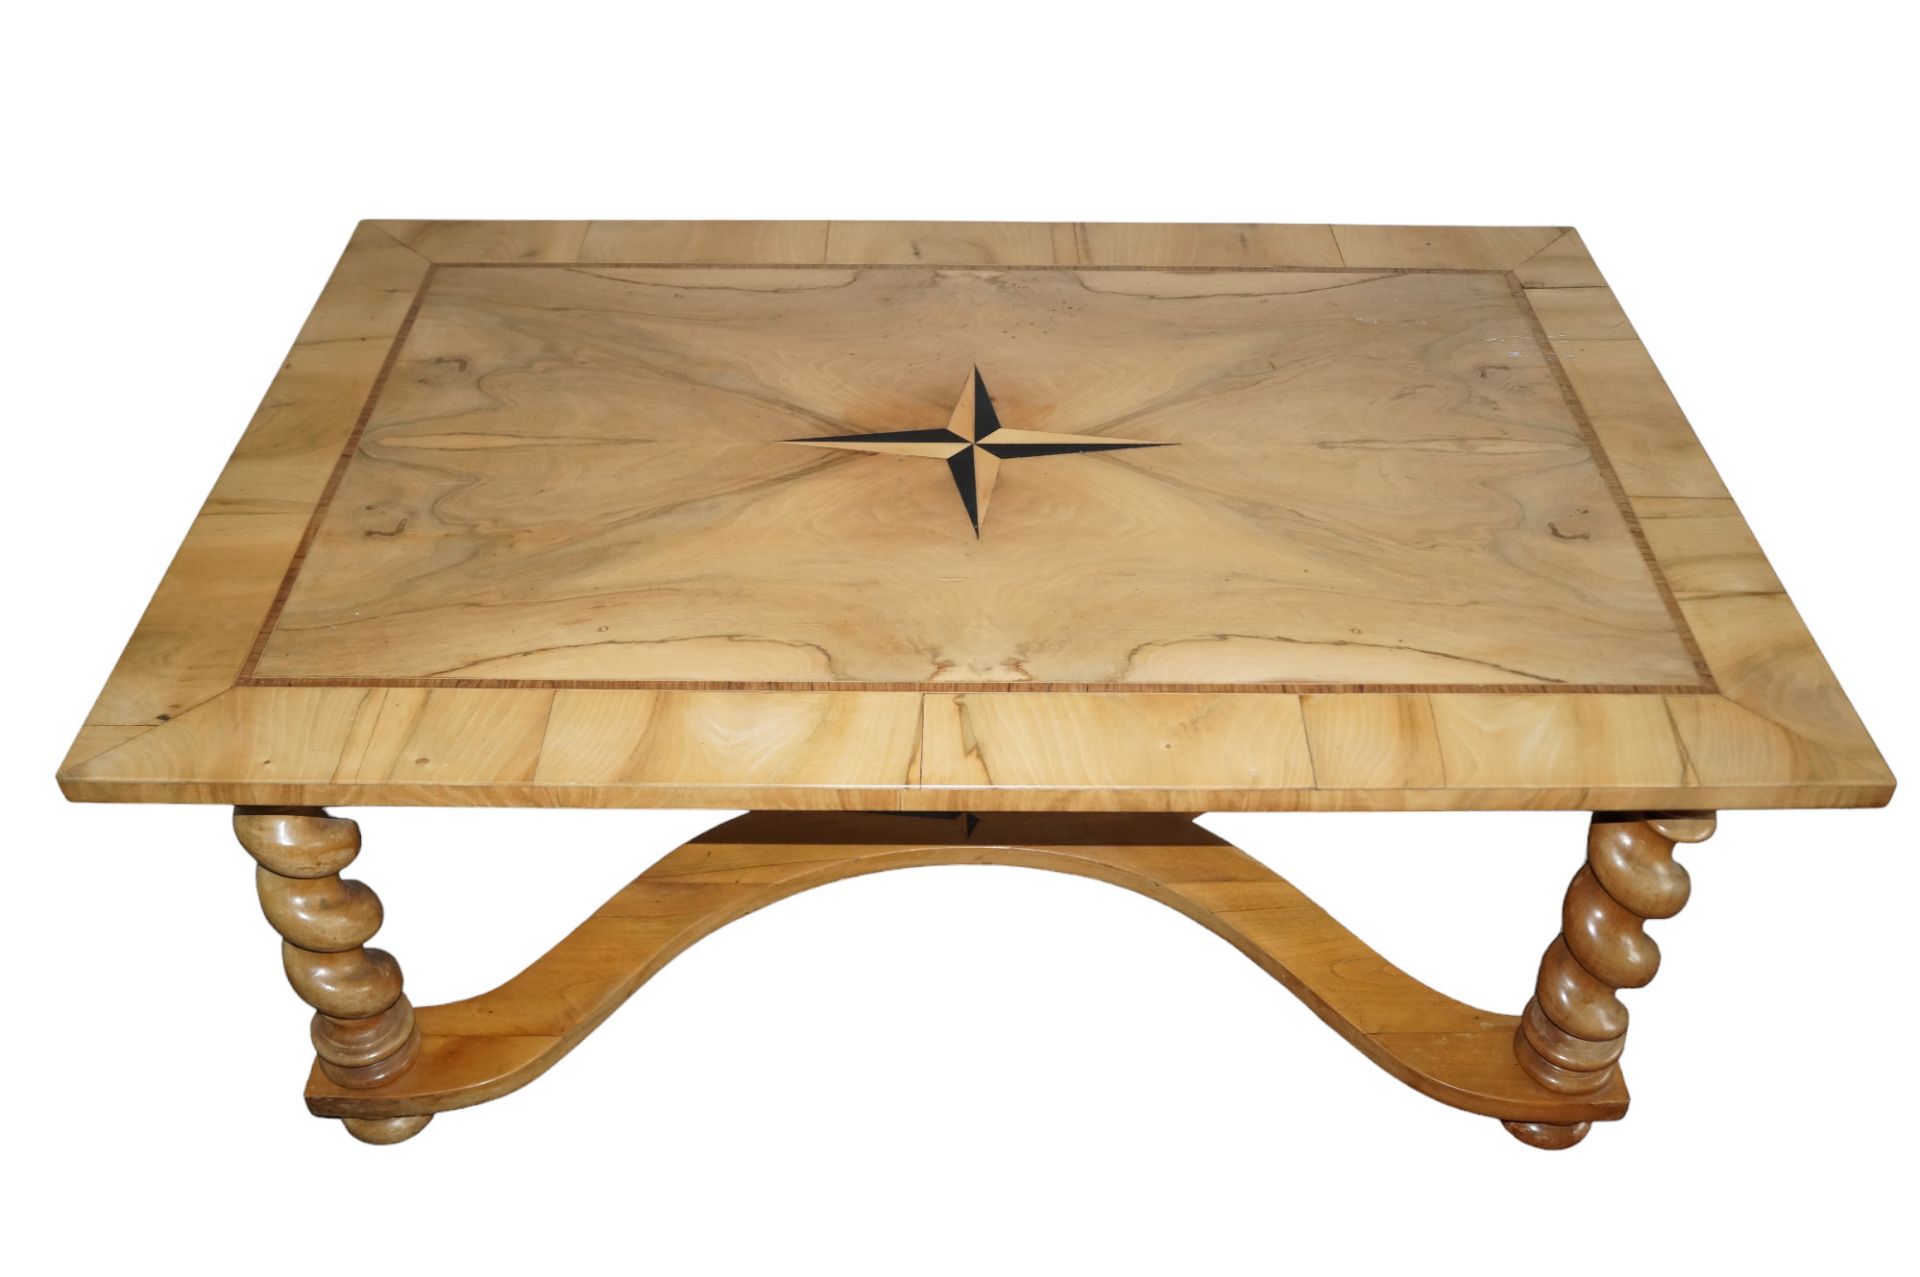 Flacher Beistelltisch wohl aus der Zeit um 1800; Tischplatte mit Stern-Intarsie; vier gedrechselte 